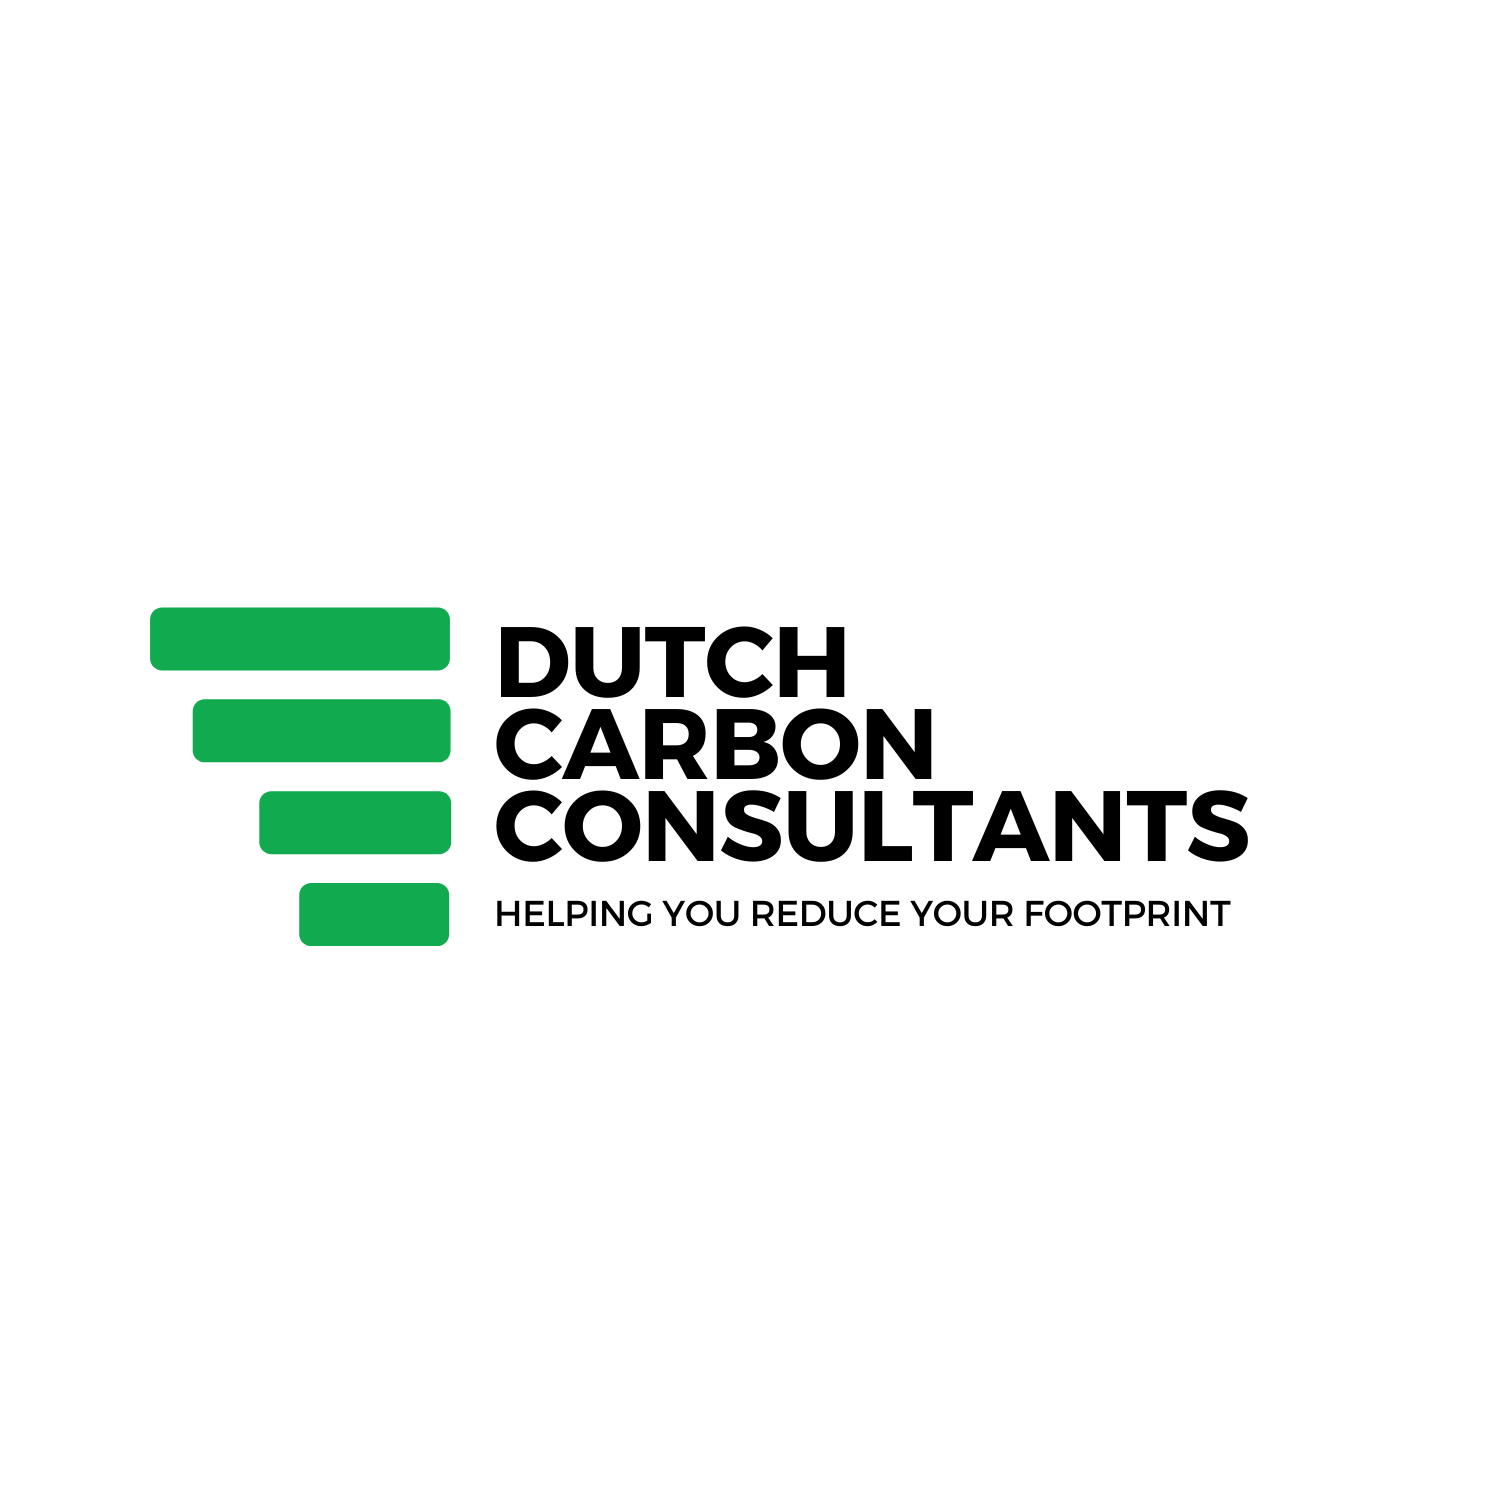 Dutch Carbon Consultants